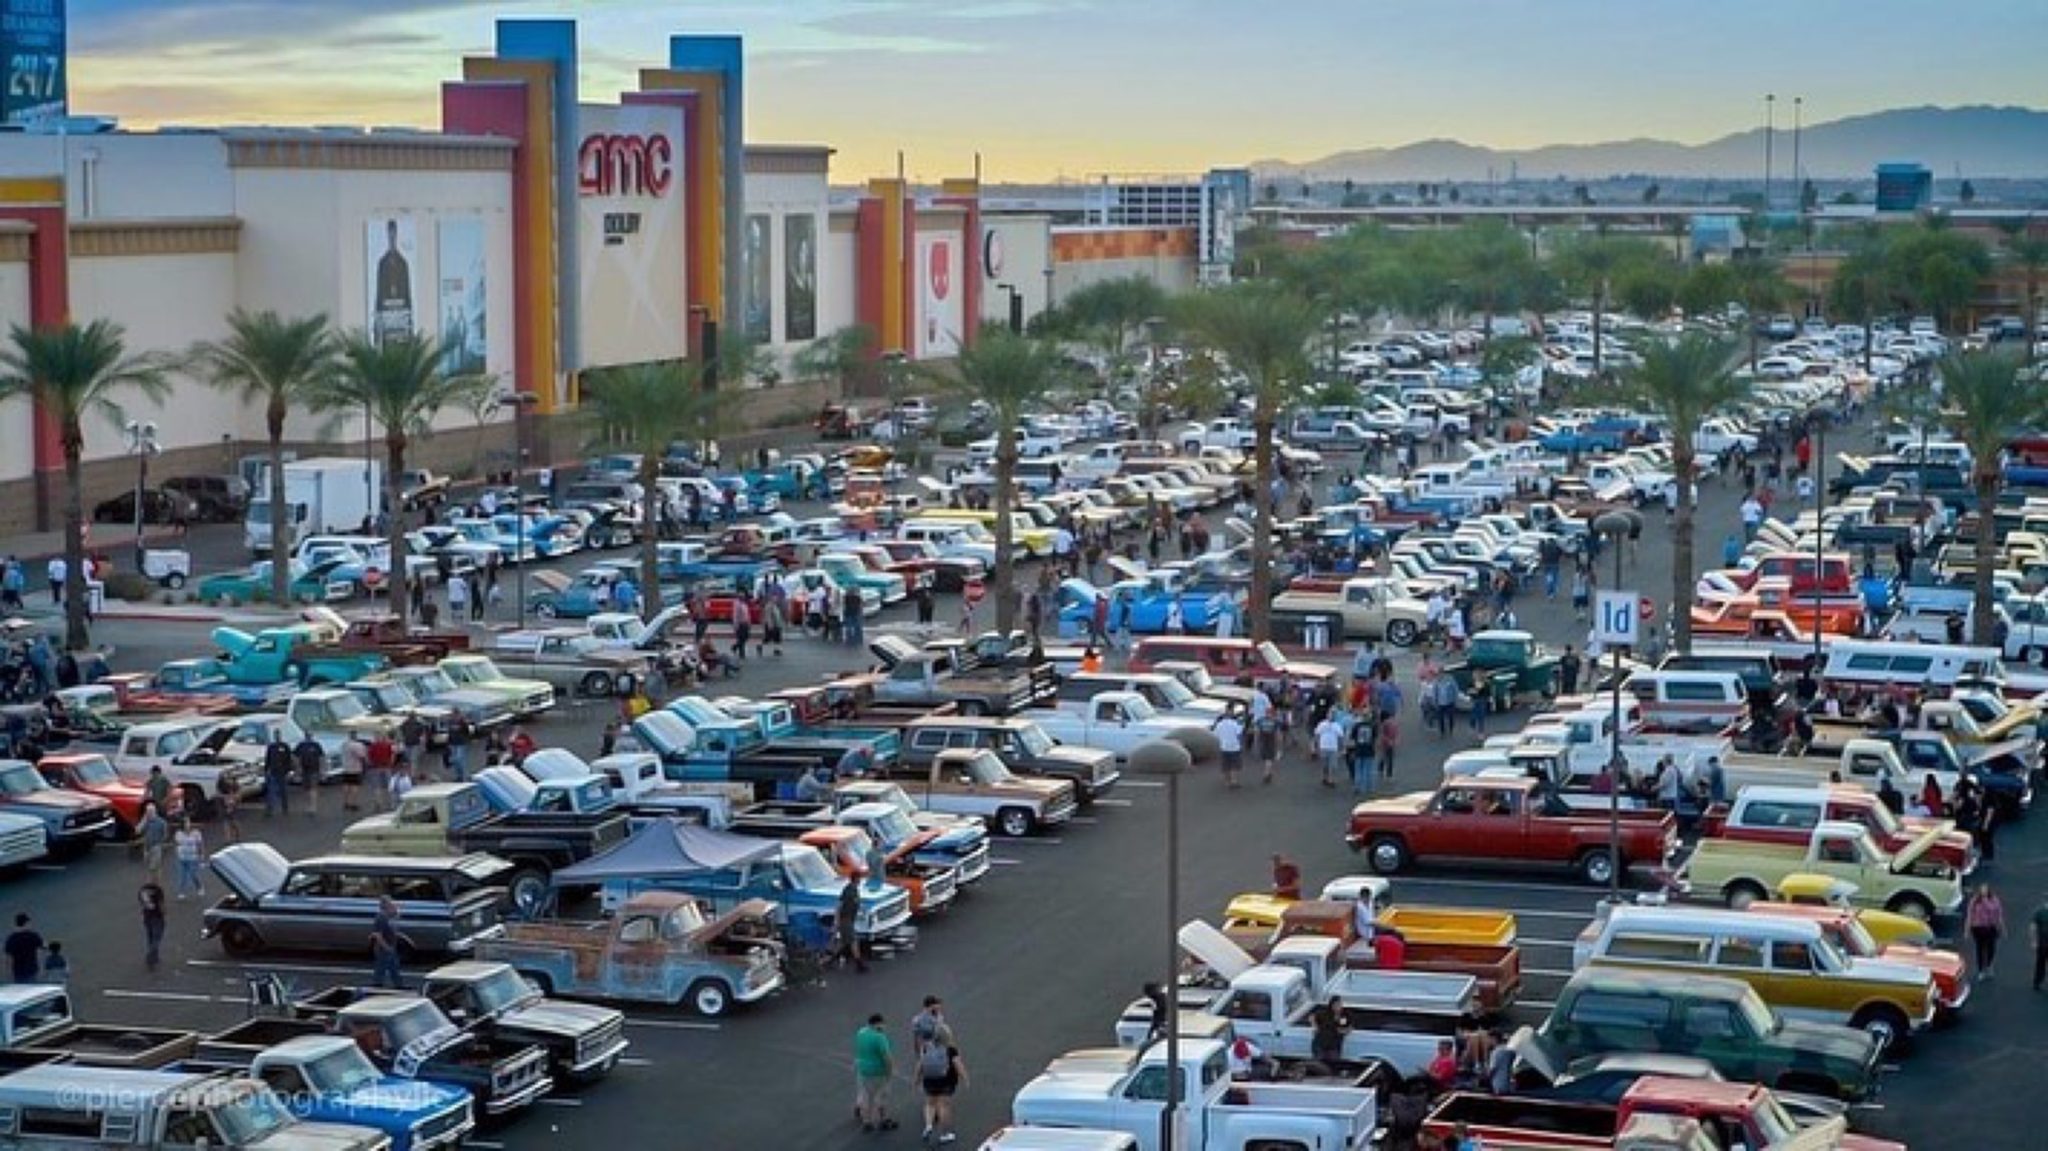 Dino's Git Down Car Show for C10s in Glendale, AZ